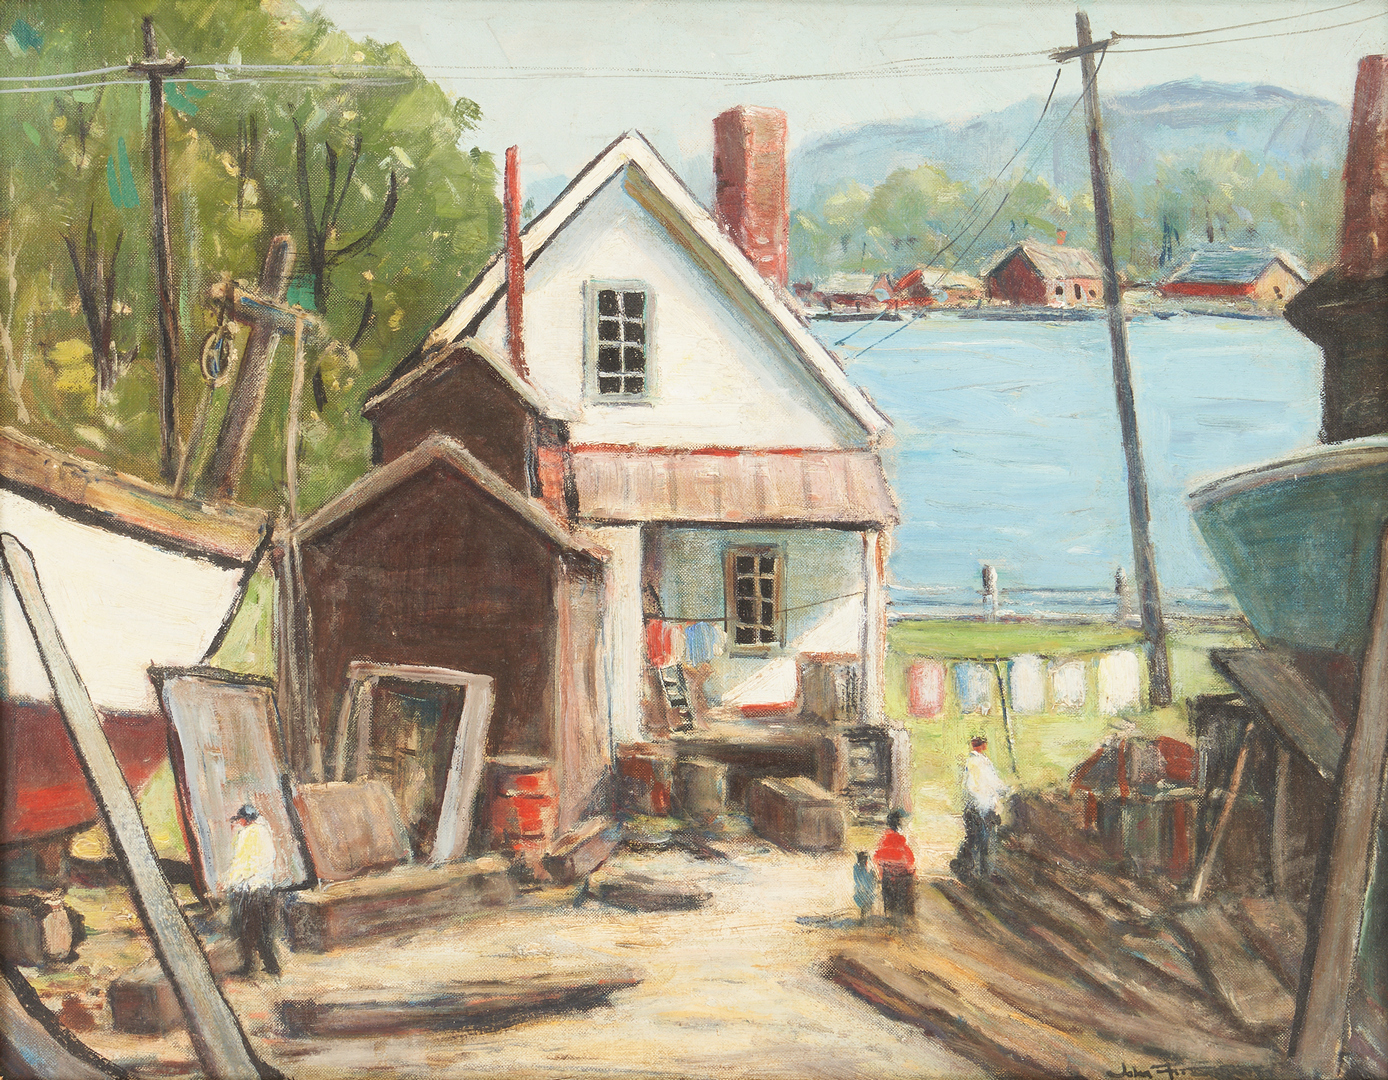 Lot 376: Exhibited John Enser O/B, the Boat Builder's House